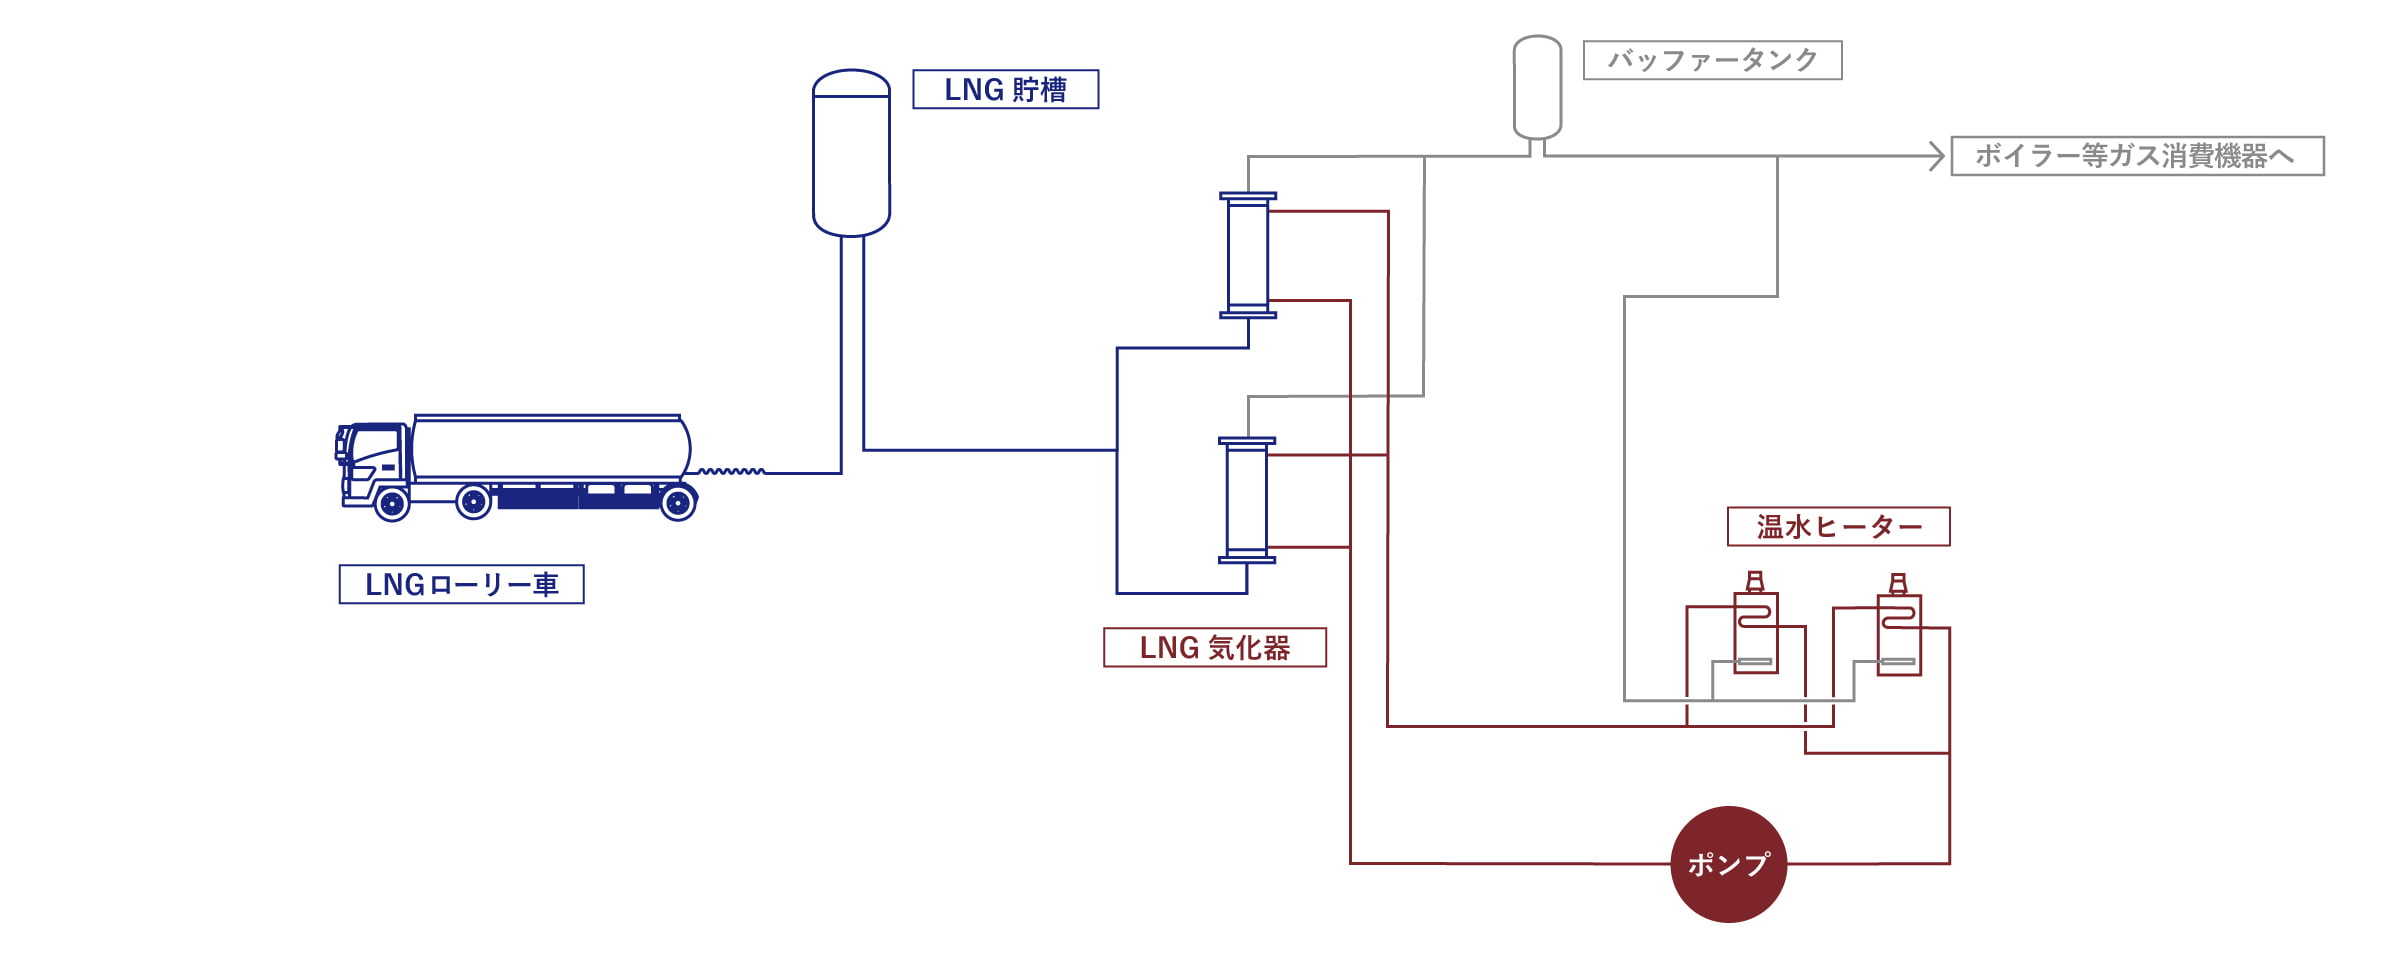 図：LNGローリー車からLNG貯槽に繋ぎ、その後LNGが活用されるフローを示している